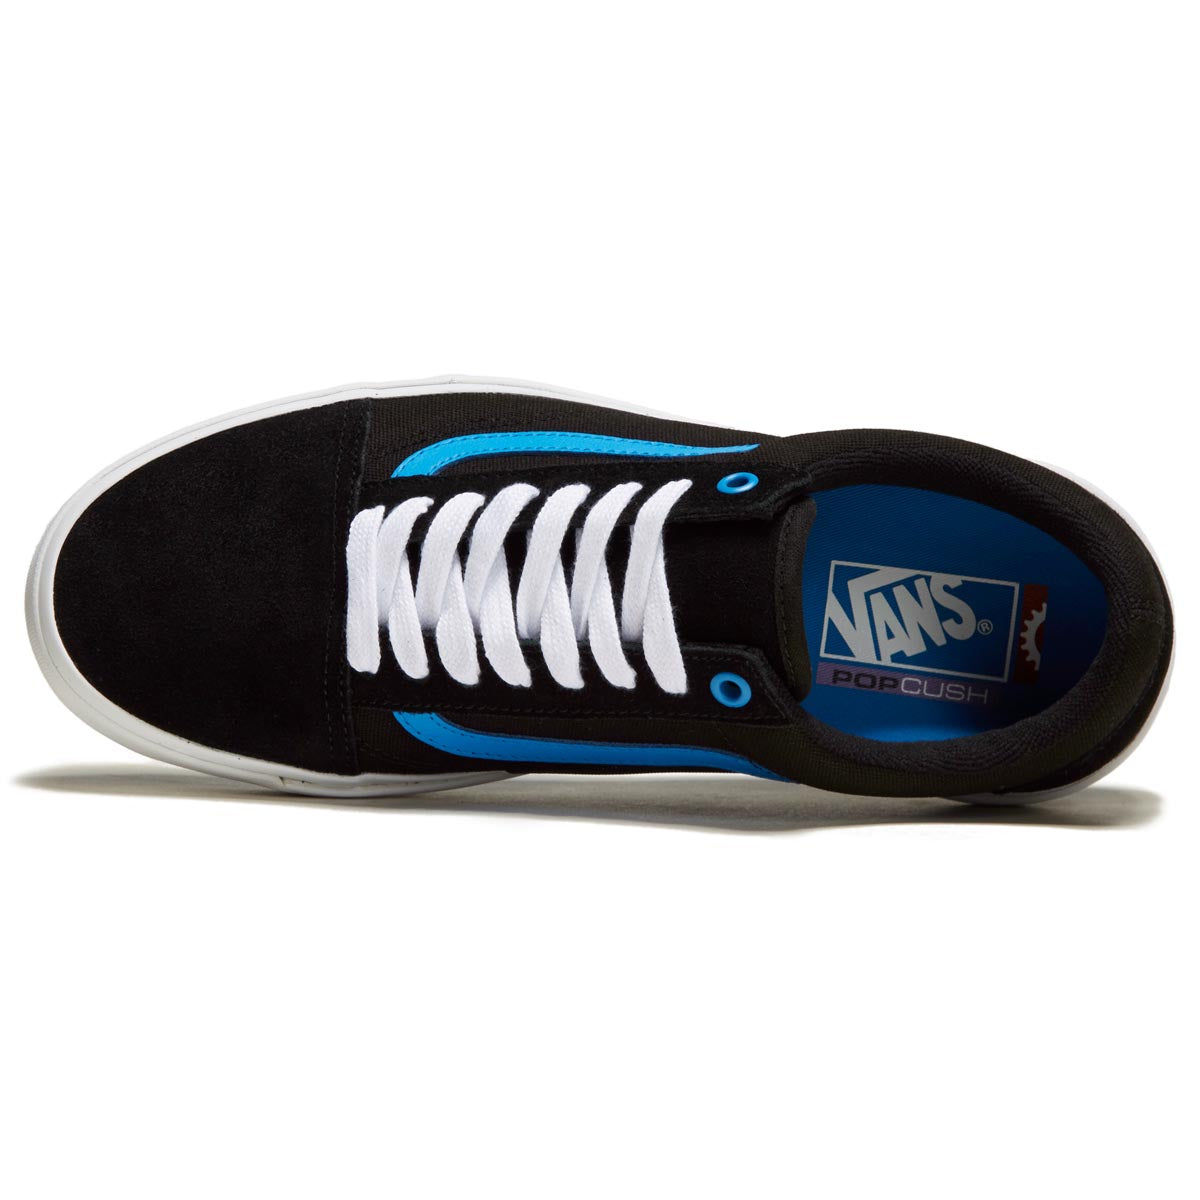 Vans Bmx Old Skool Shoes - Black/Blue image 3